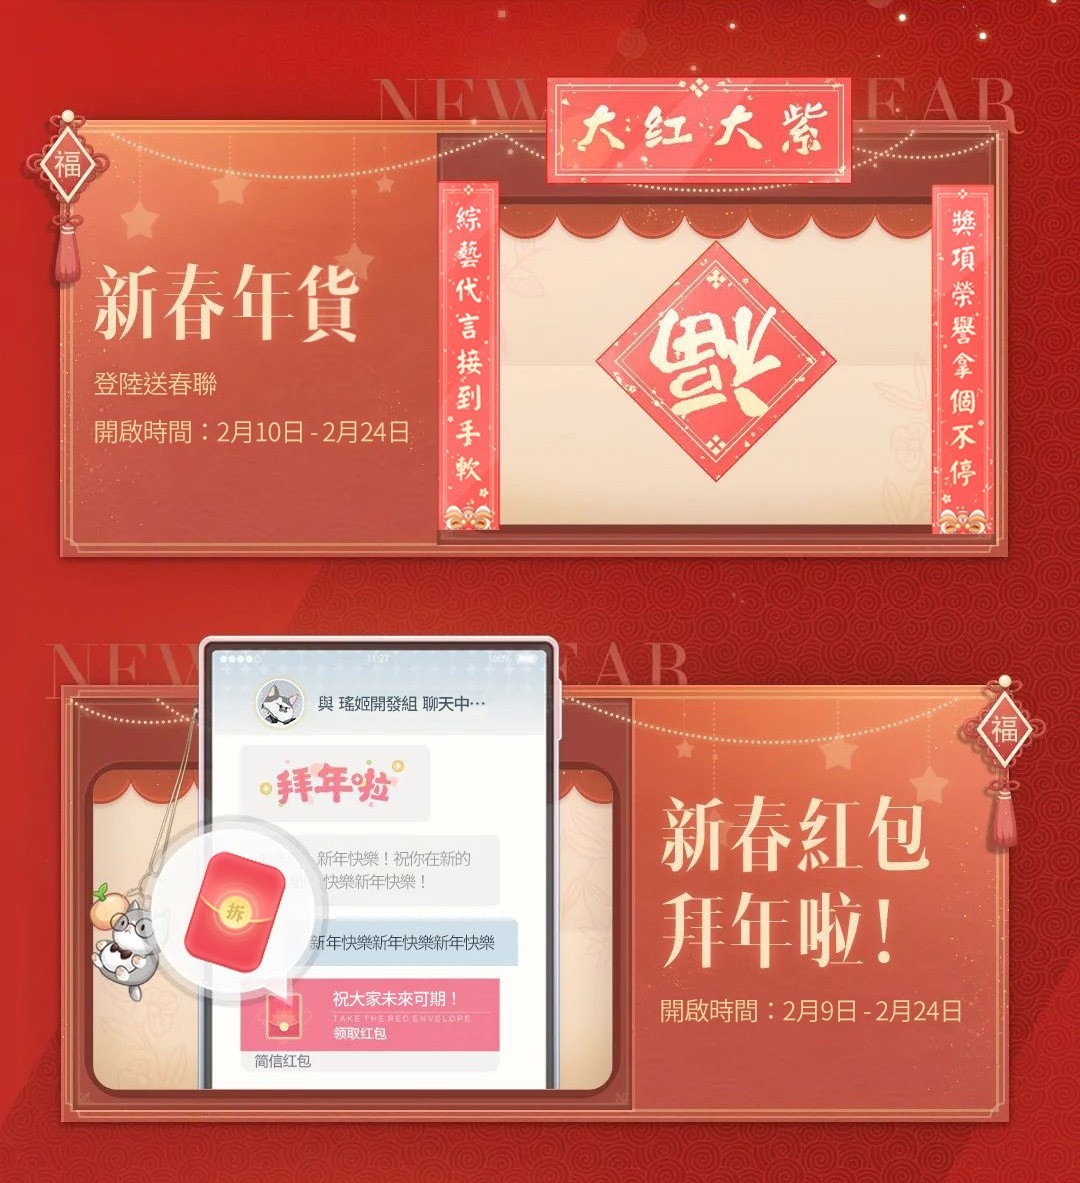 《绝对演绎》龙年春节盛典揭开序幕推出一系列春节改版玩法